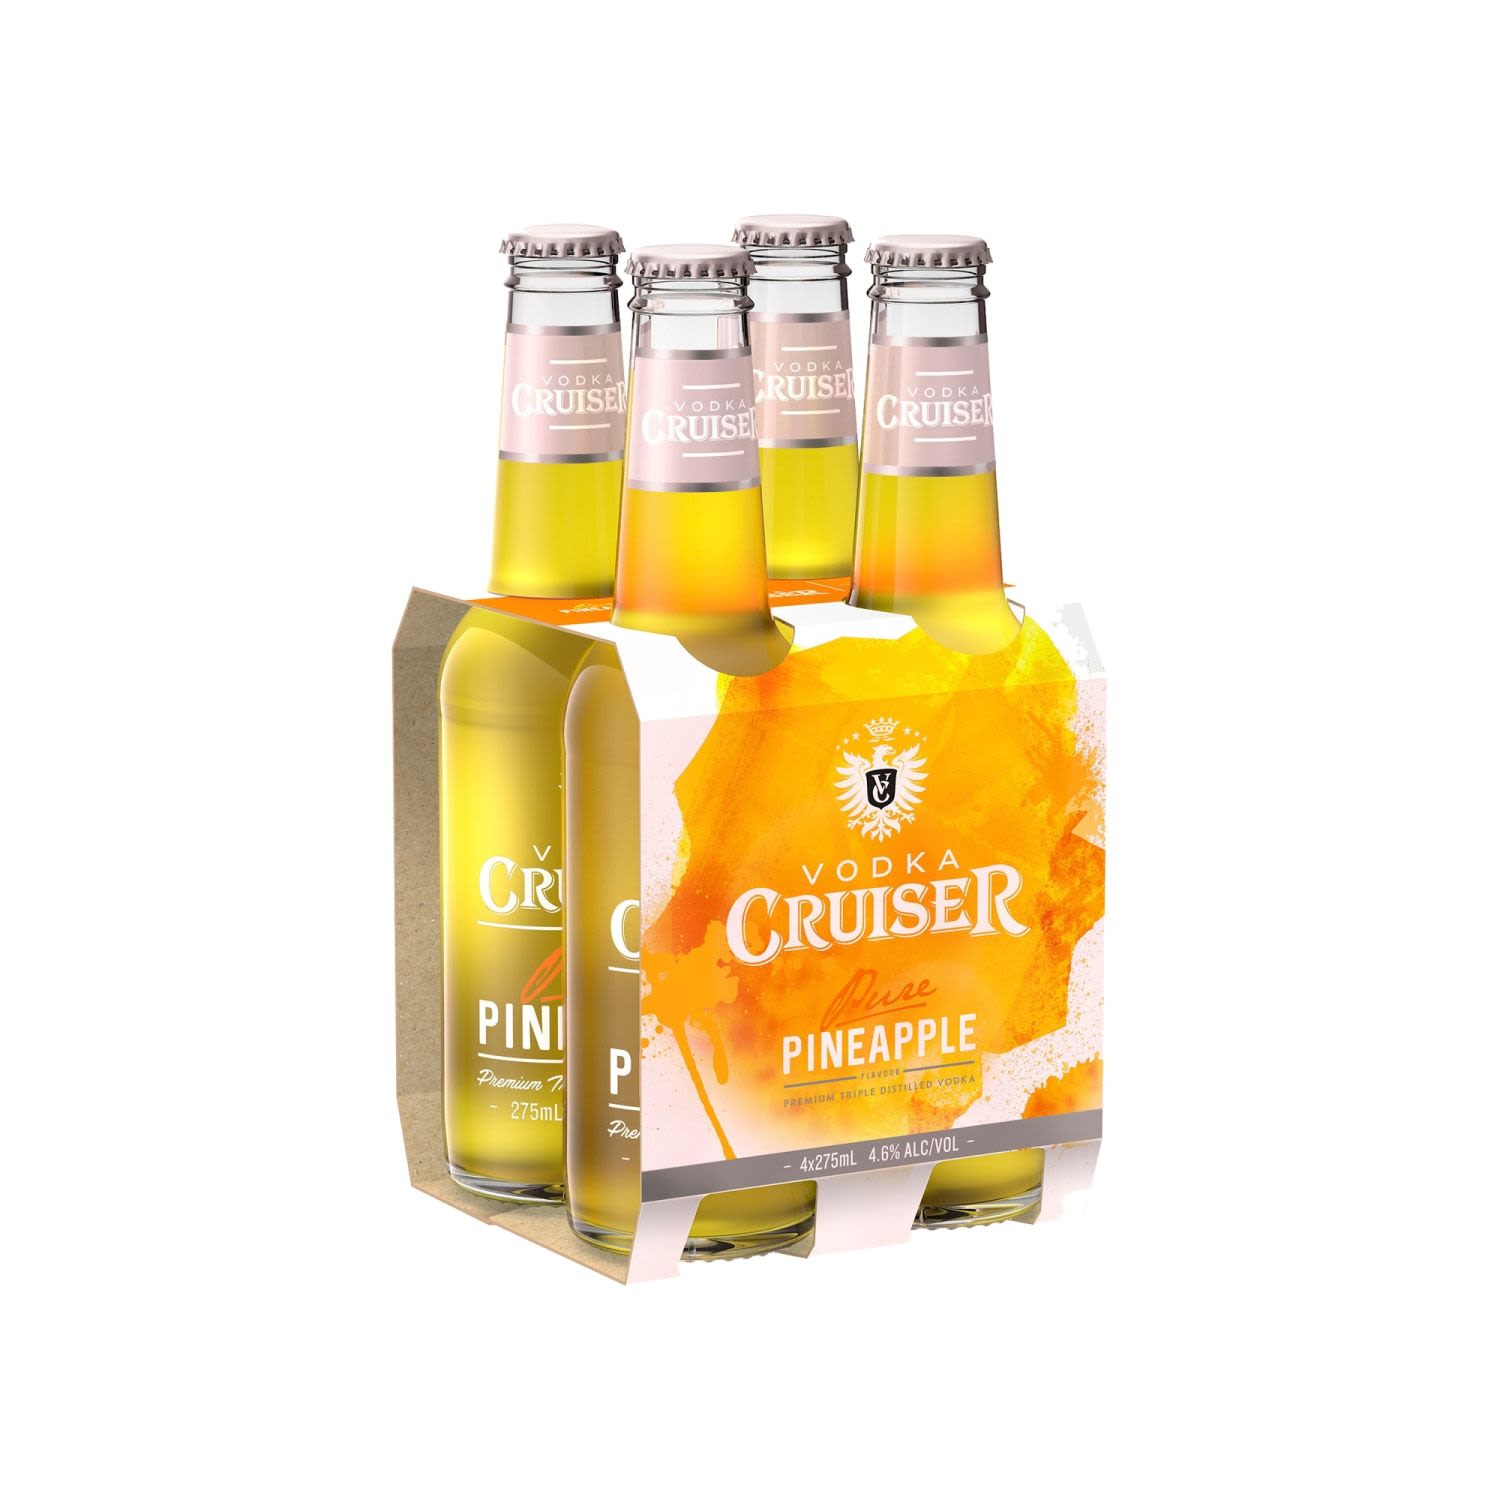 Vodka Cruiser Pure Pineapple Bottle 275mL 4 Pack